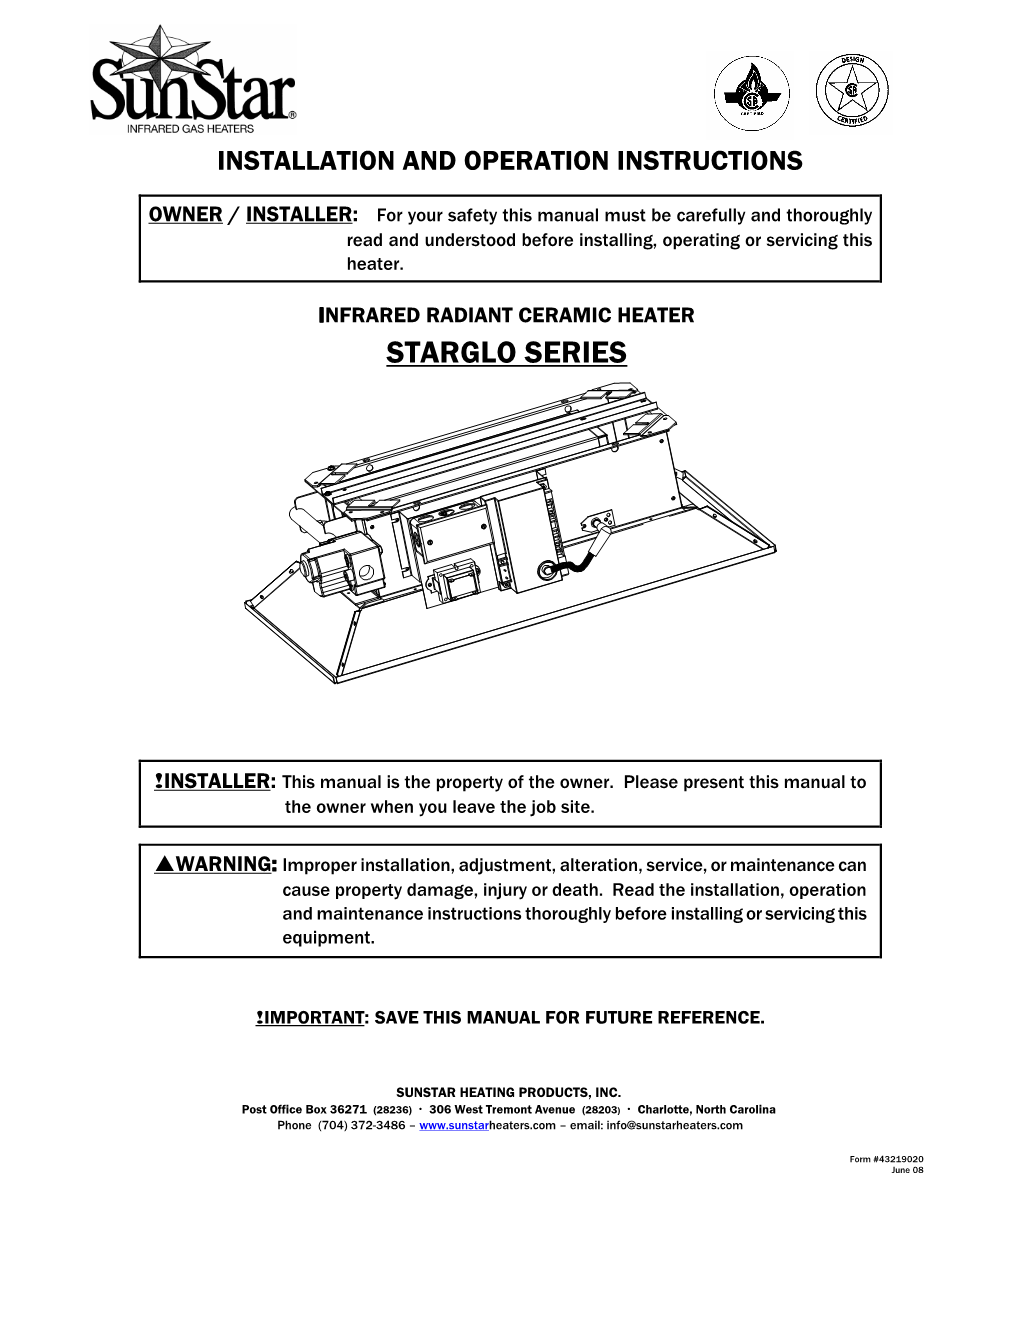 Sunstar SG Starglo Manual